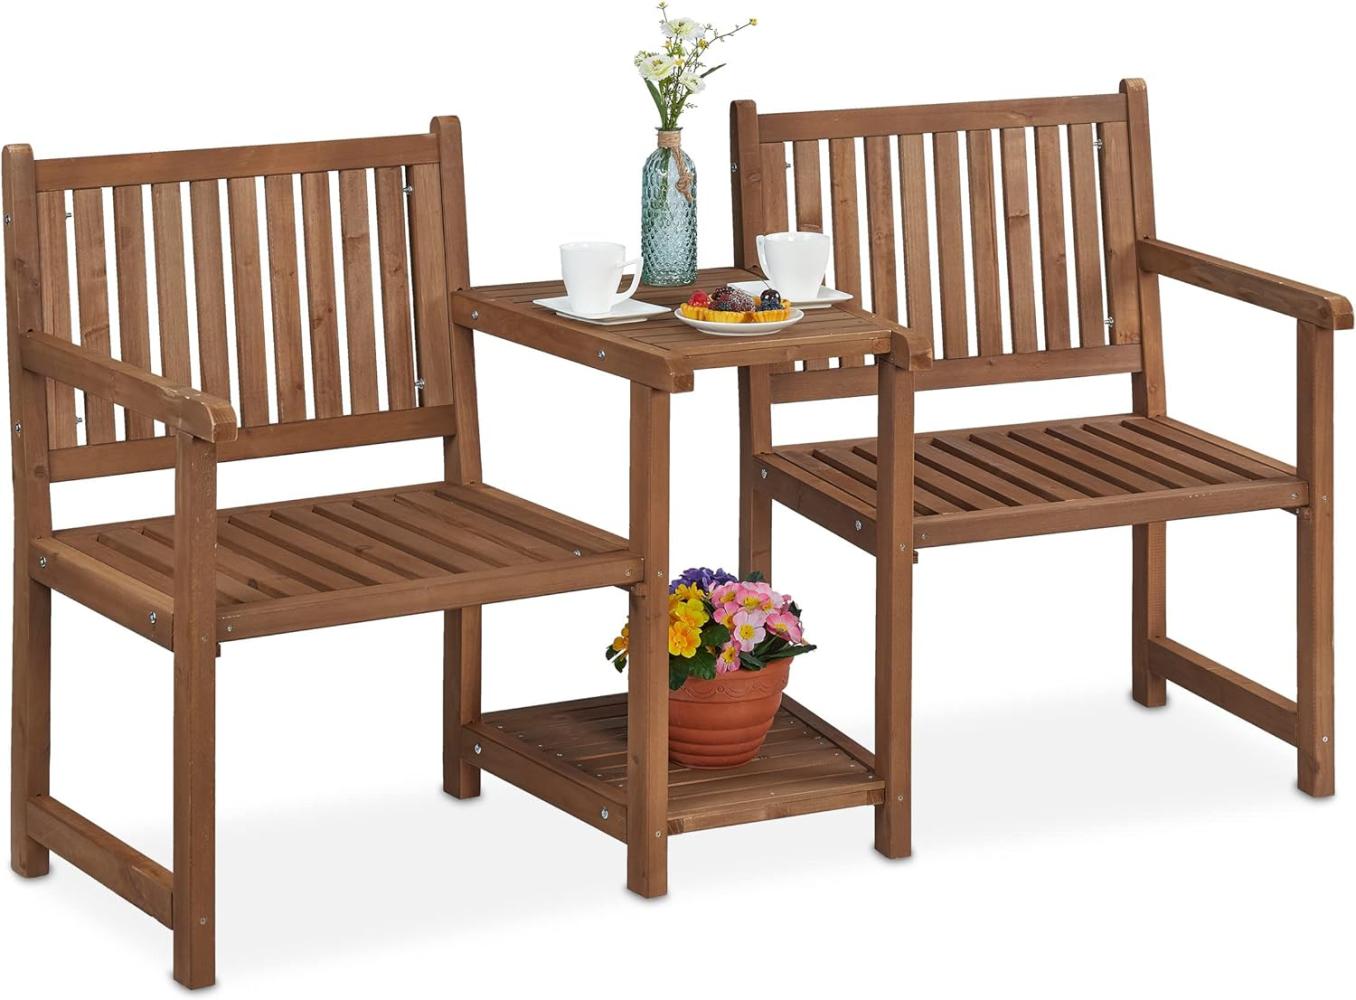 Relaxdays Gartenbank mit integriertem Tisch, 2-Sitzer, robuste Holz Sitzbank, Garten & Balkon, HBT: 86x161x61 cm, braun, 100% Bild 1